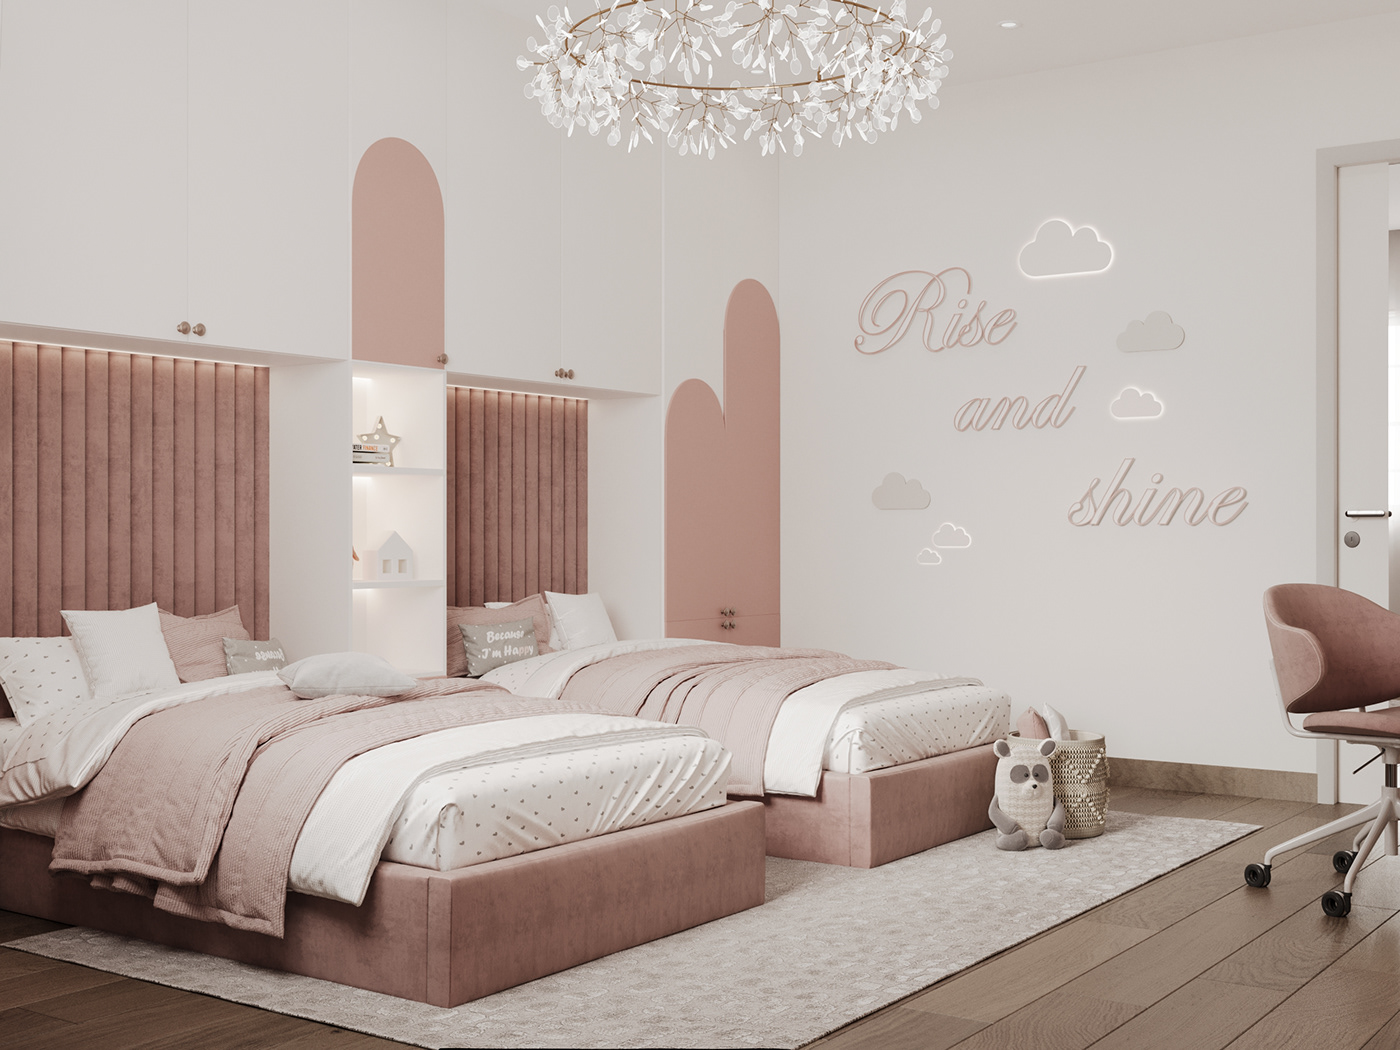 3ds max bedroom corona interior design  kidsbedroomdesign